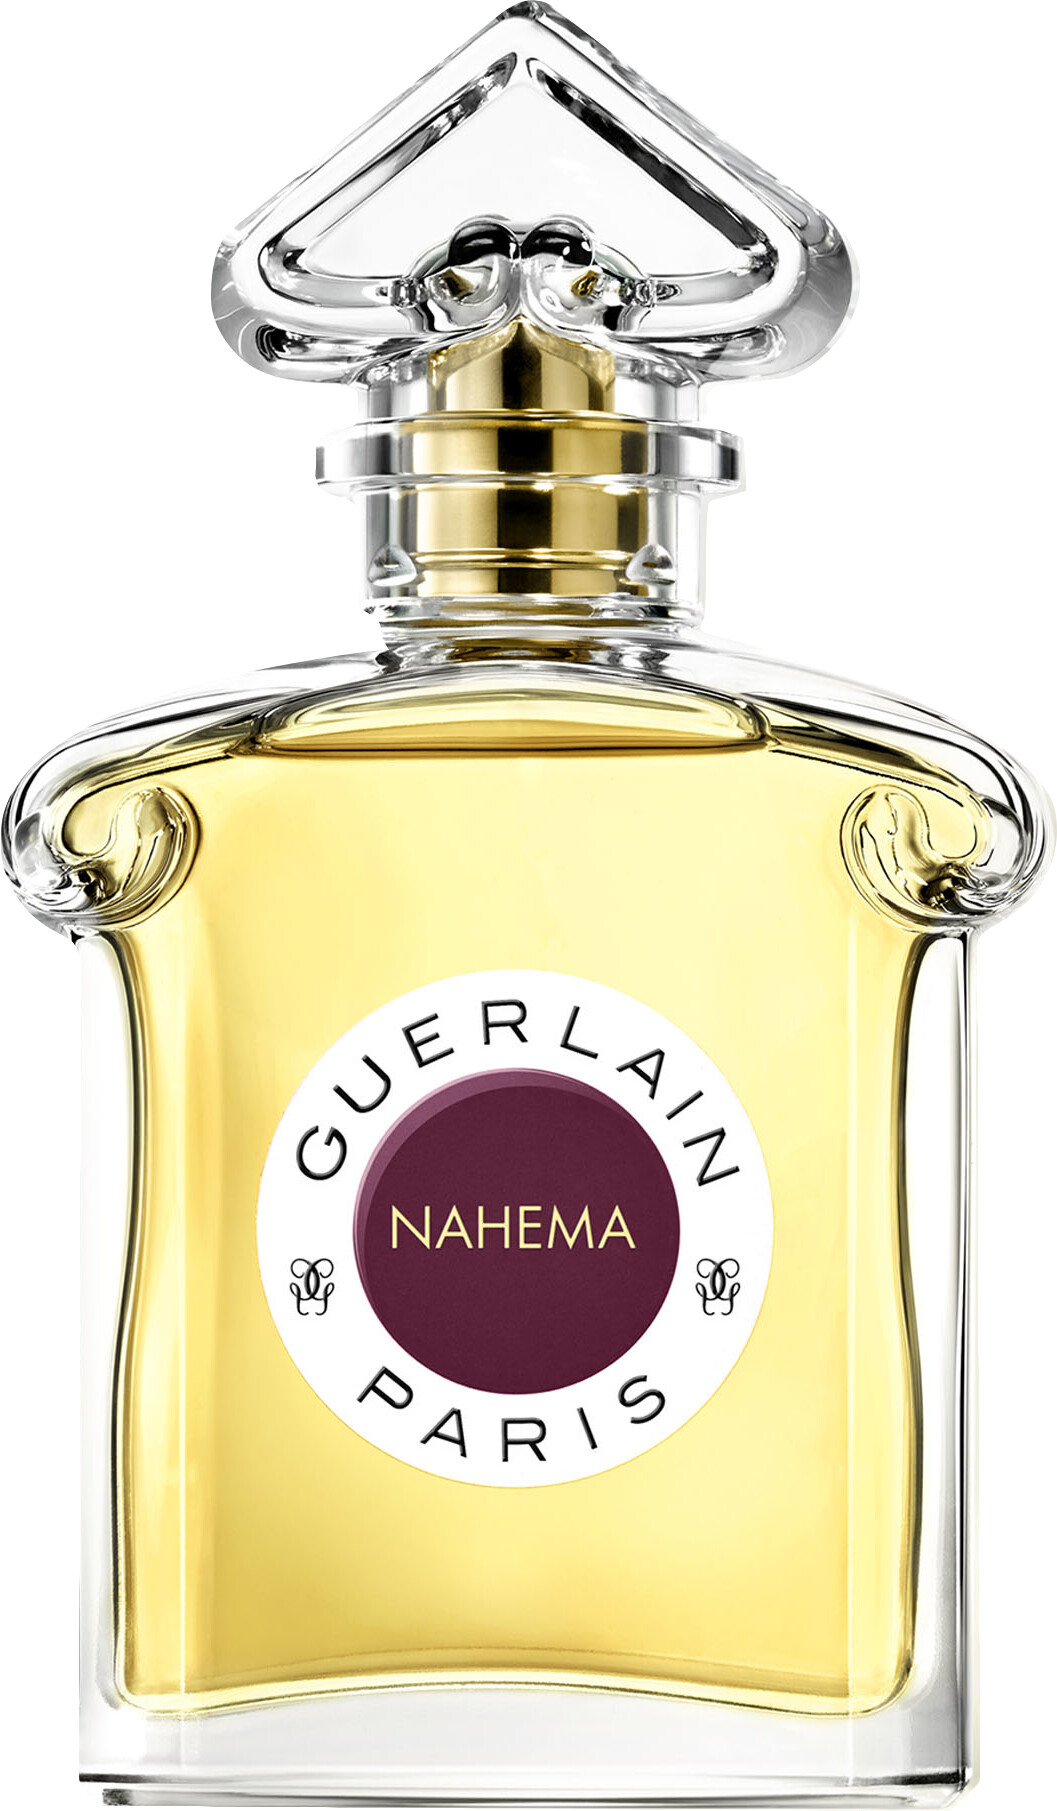 GUERLAIN Nahema Eau de Parfum Spray 75ml